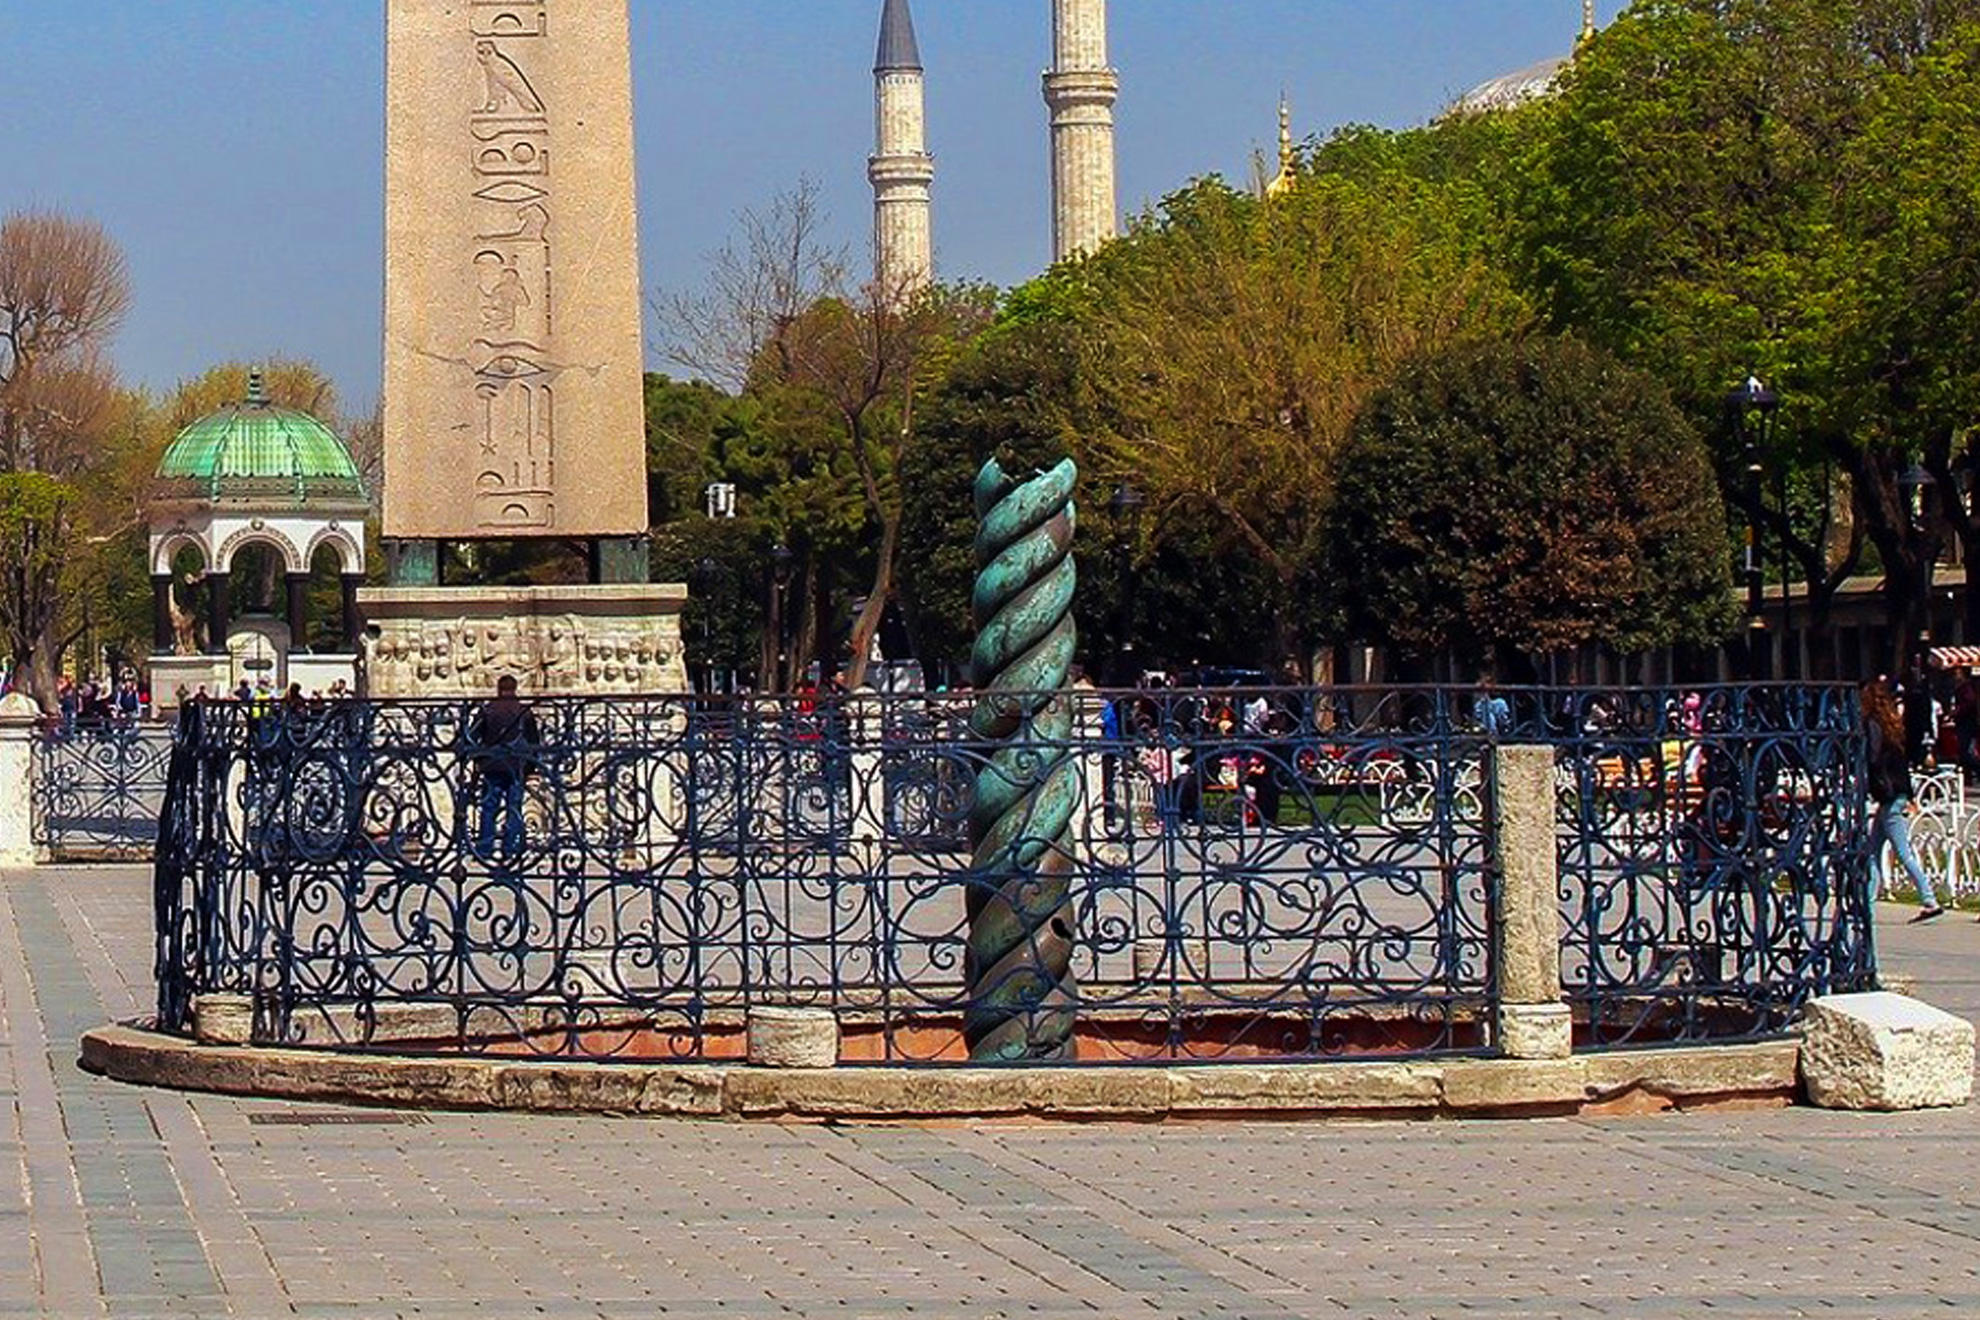 Фестивалът на лалето в Истанбул, 3 нощувки - Змиевидната колона, Истанбул, Турция - "Snake column" or "Serpents column", Istanbul, Turkey